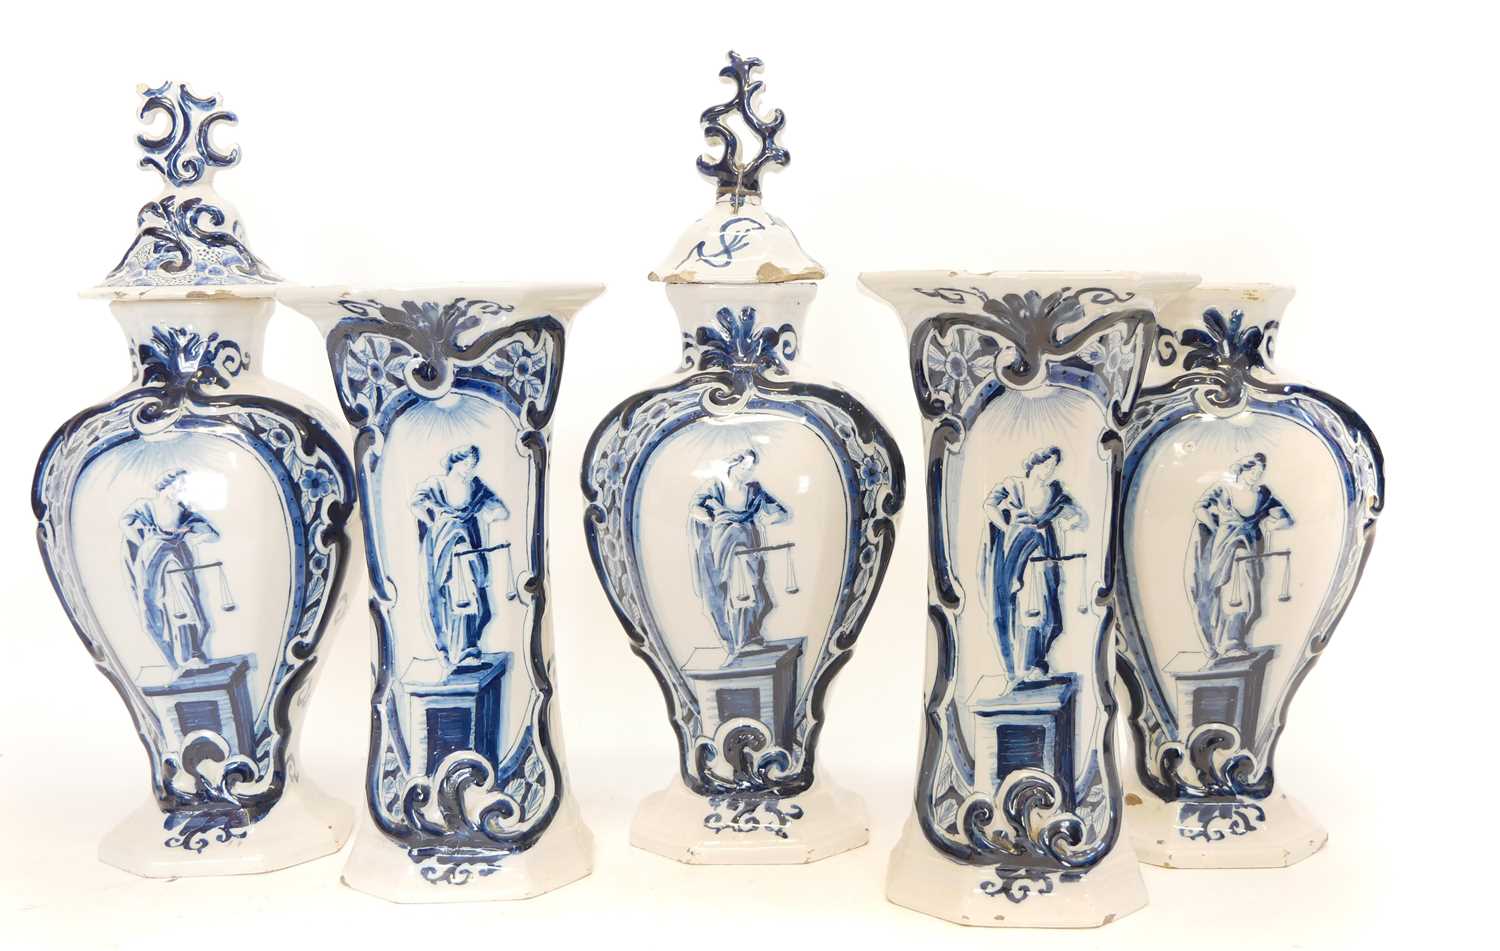 Lot 235 - Garniture of five Delft vases